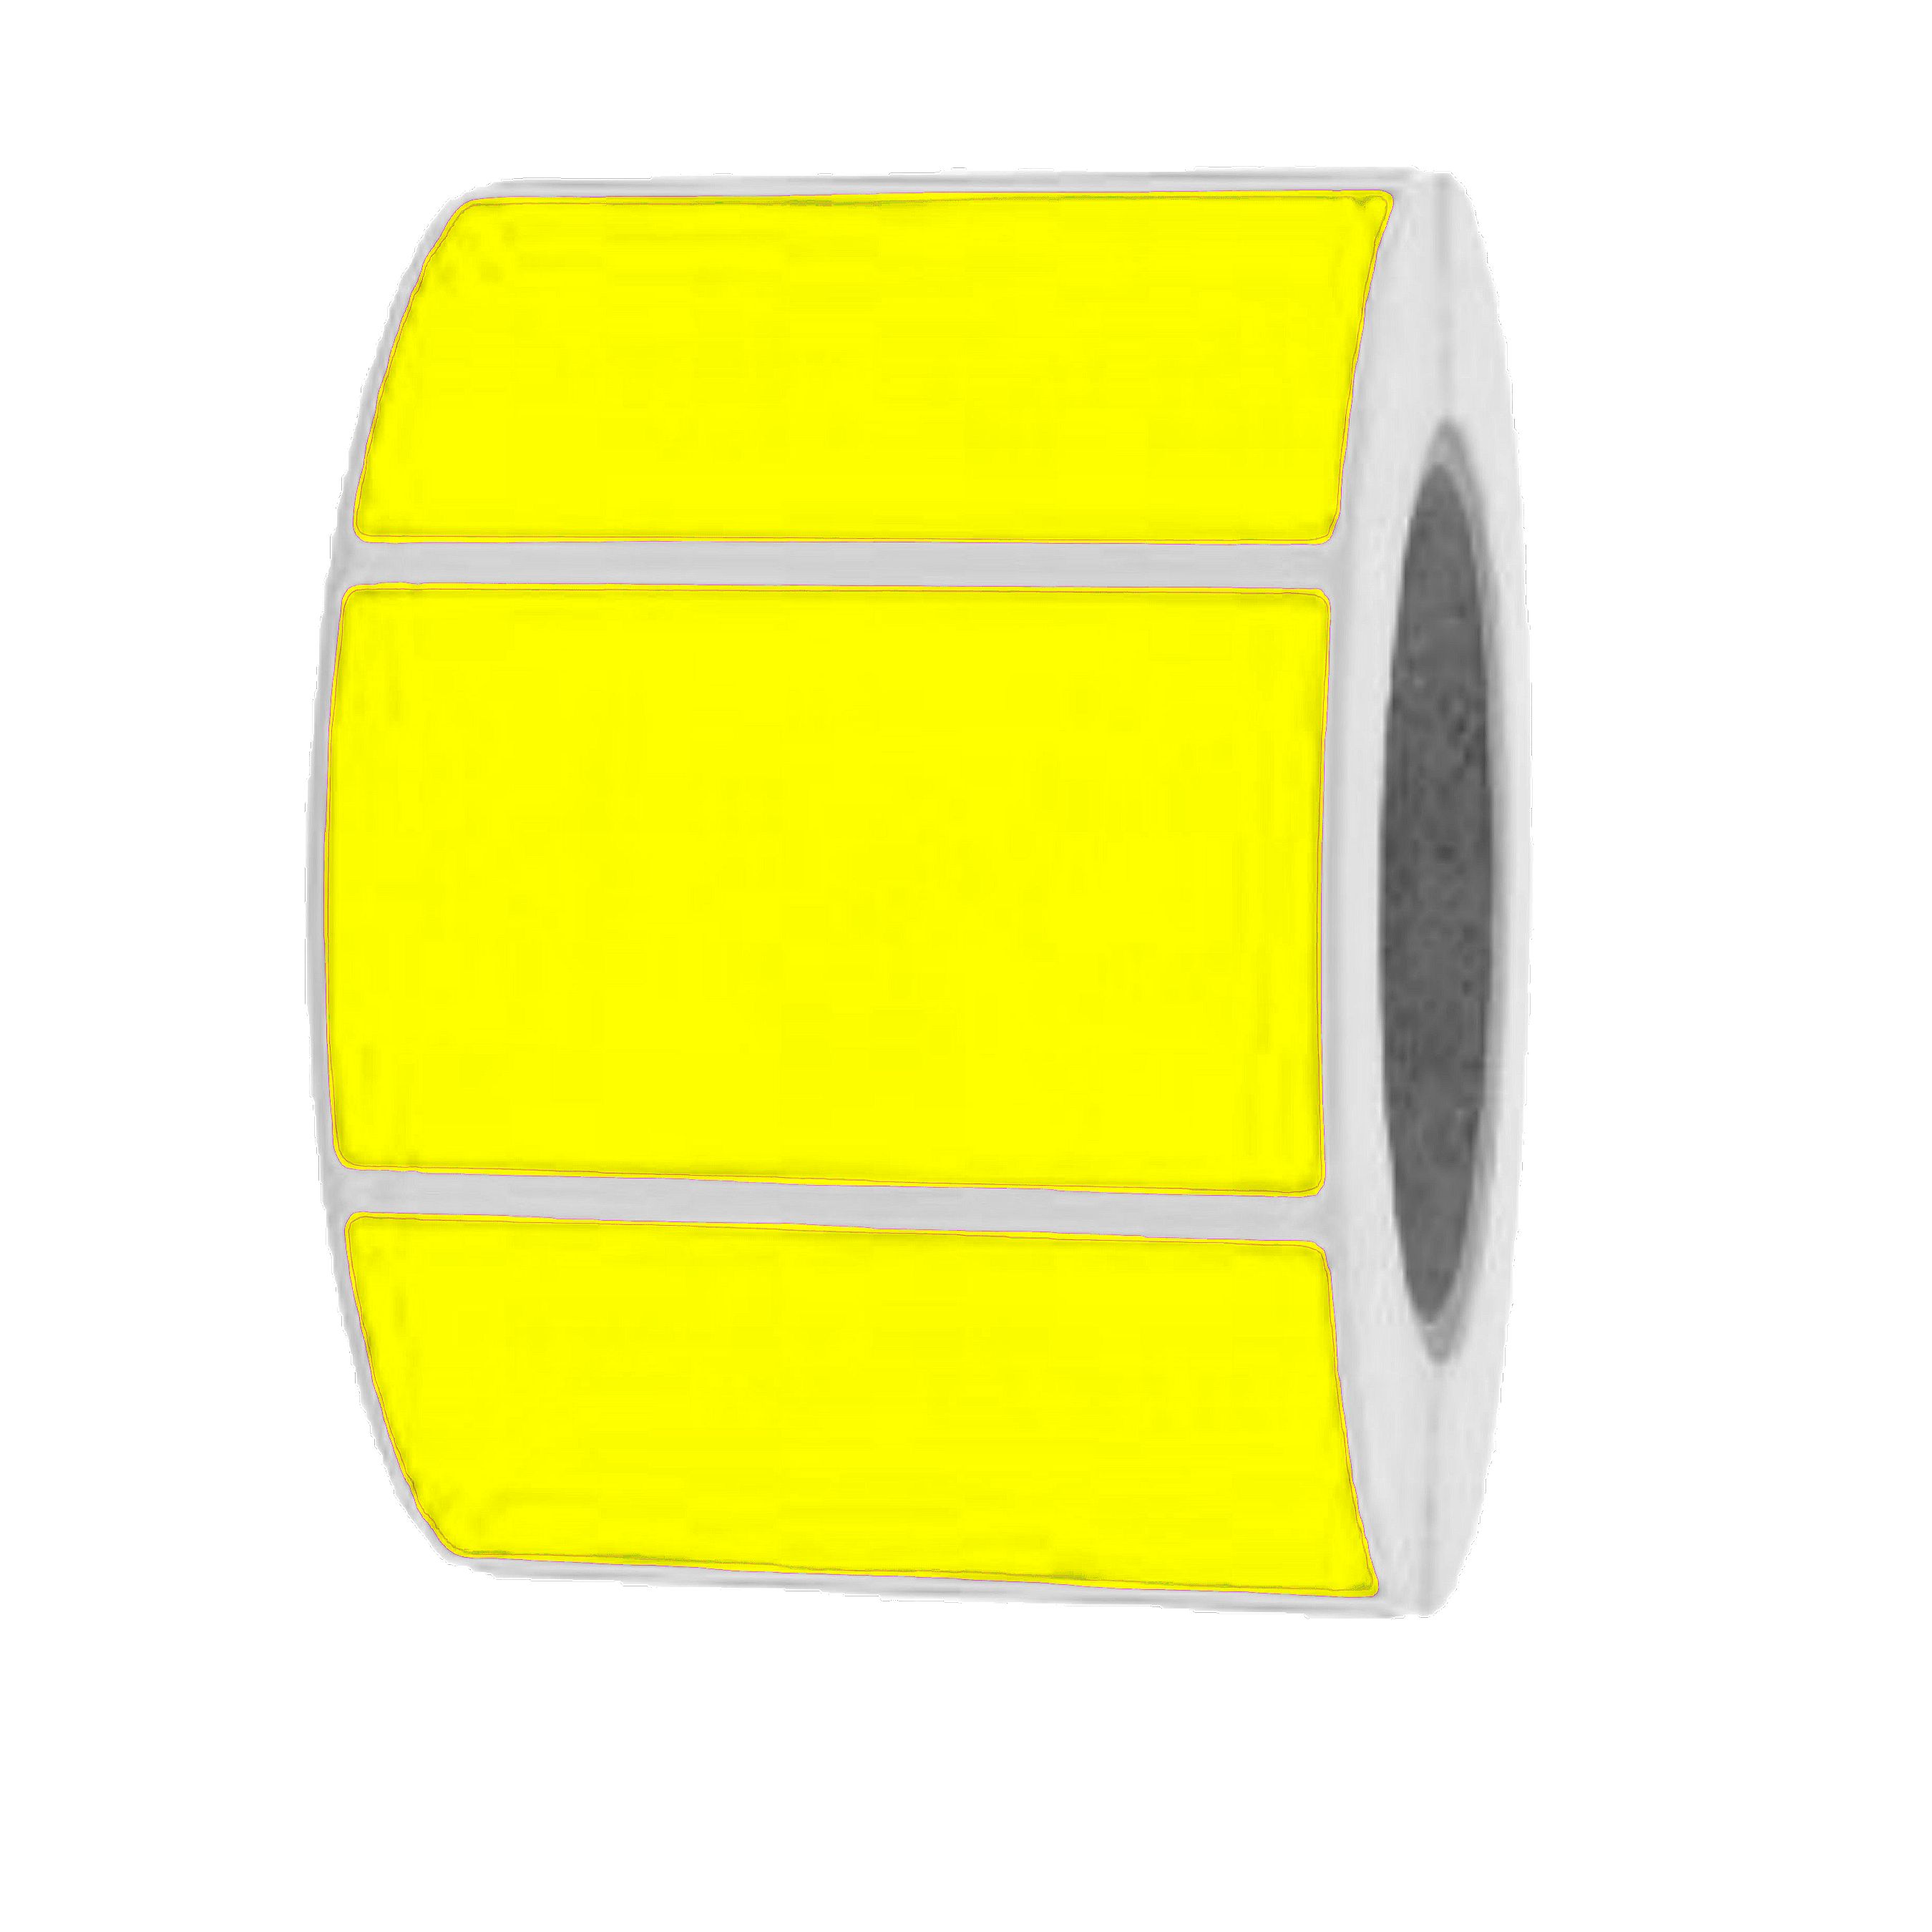 76 x 51mm Neon Fluoreszierend Gelb CLEARANCE Aufkleber/Etiketten 